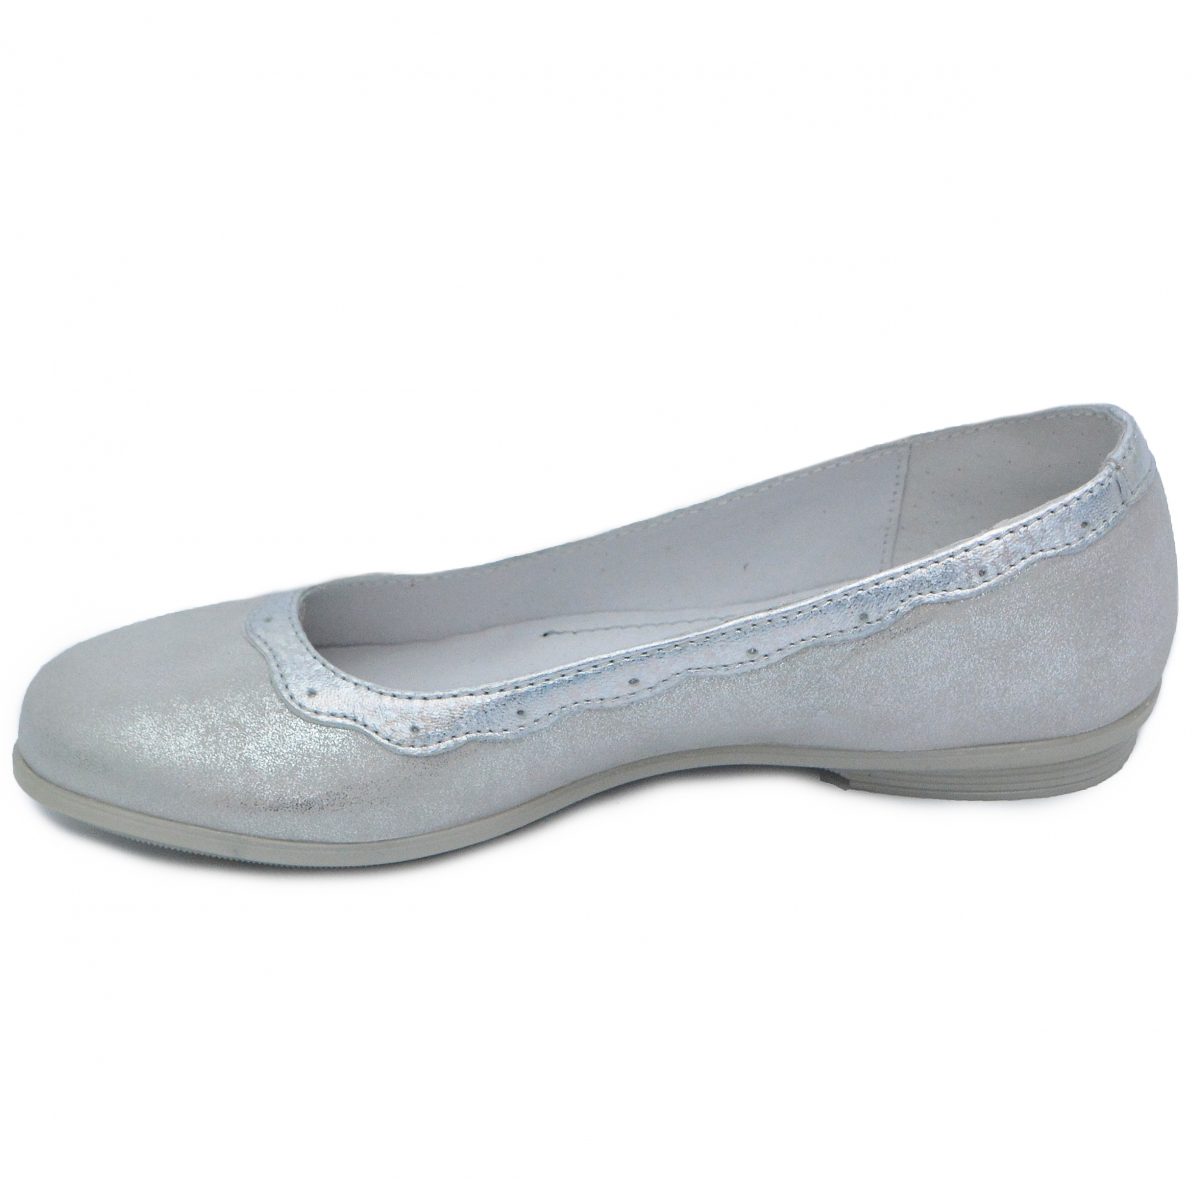 Pantofi balerini fete pj shoes Lulu argintiu, marimi 27-36